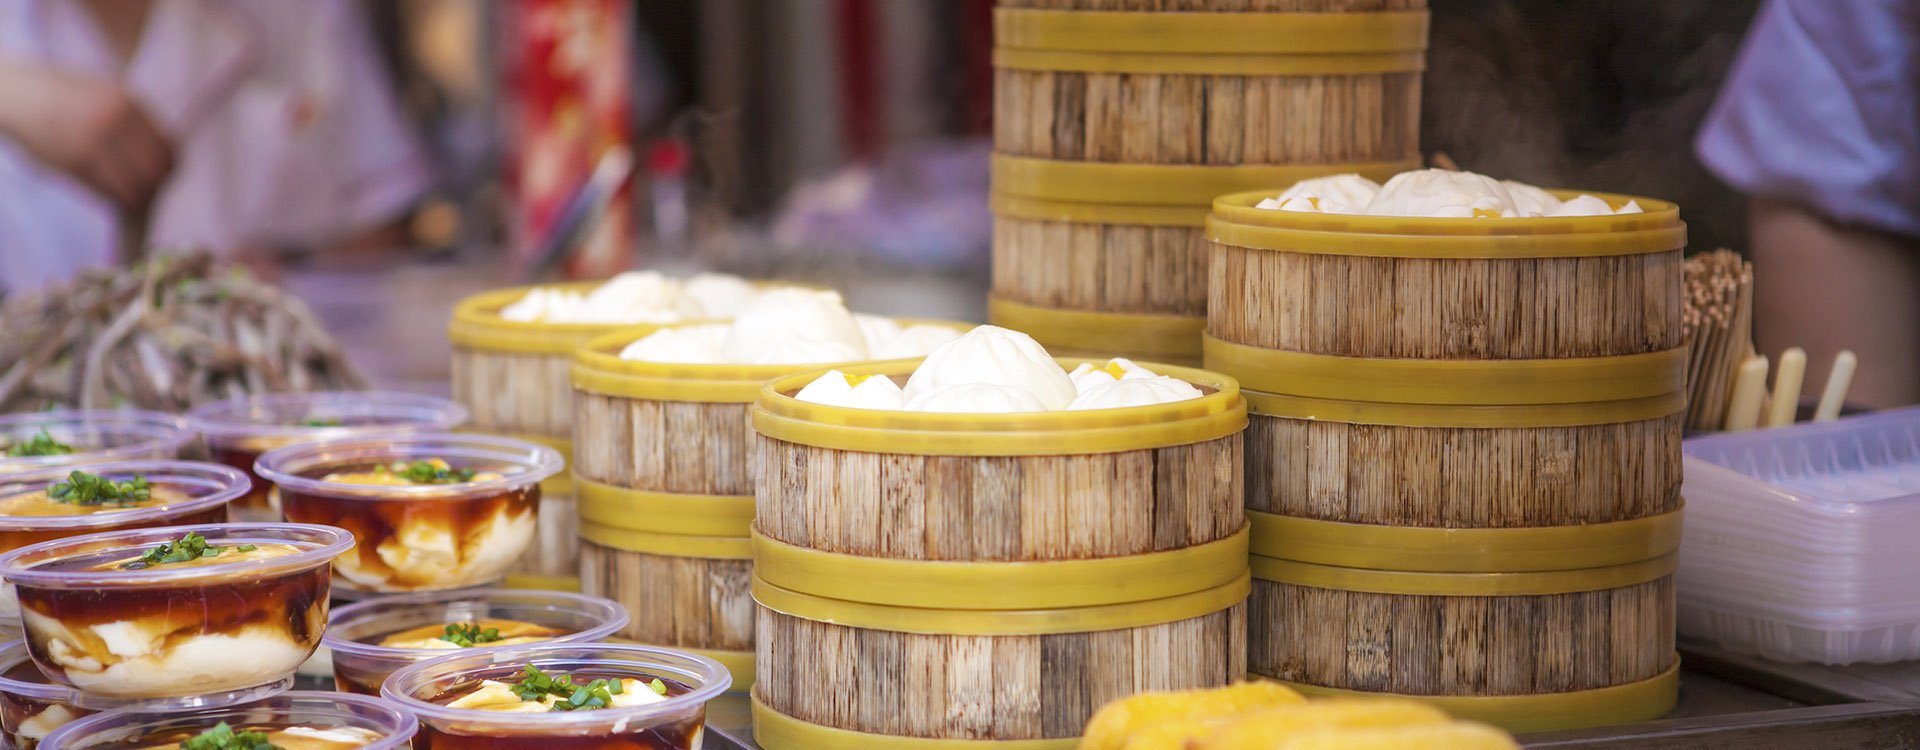 China, Beijing, Wangfujin snack street, chinese street food, steamed dumplings